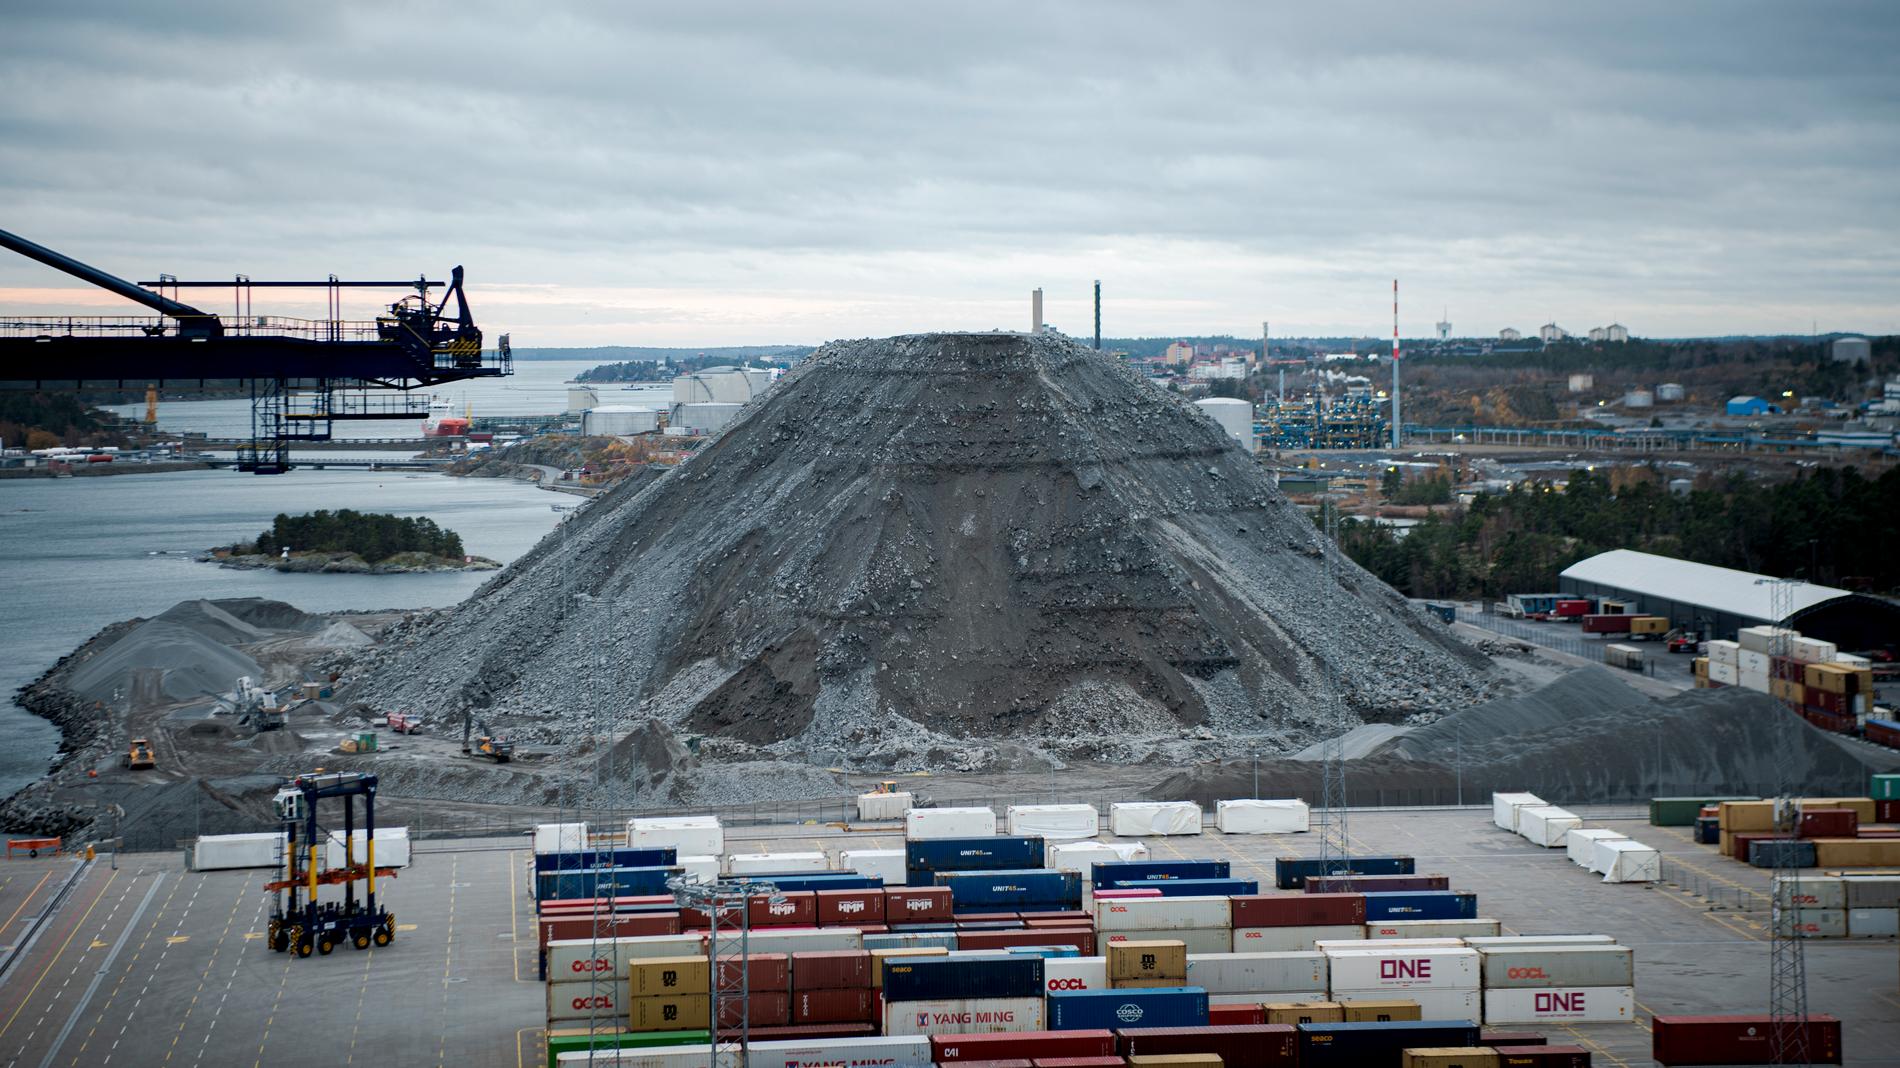 Tillslaget i Norvik hamn i Nynäshamn gjordes i samverkan mellan Åklagarmyndigheten, Polisen och Tullverket. Arkivbild.